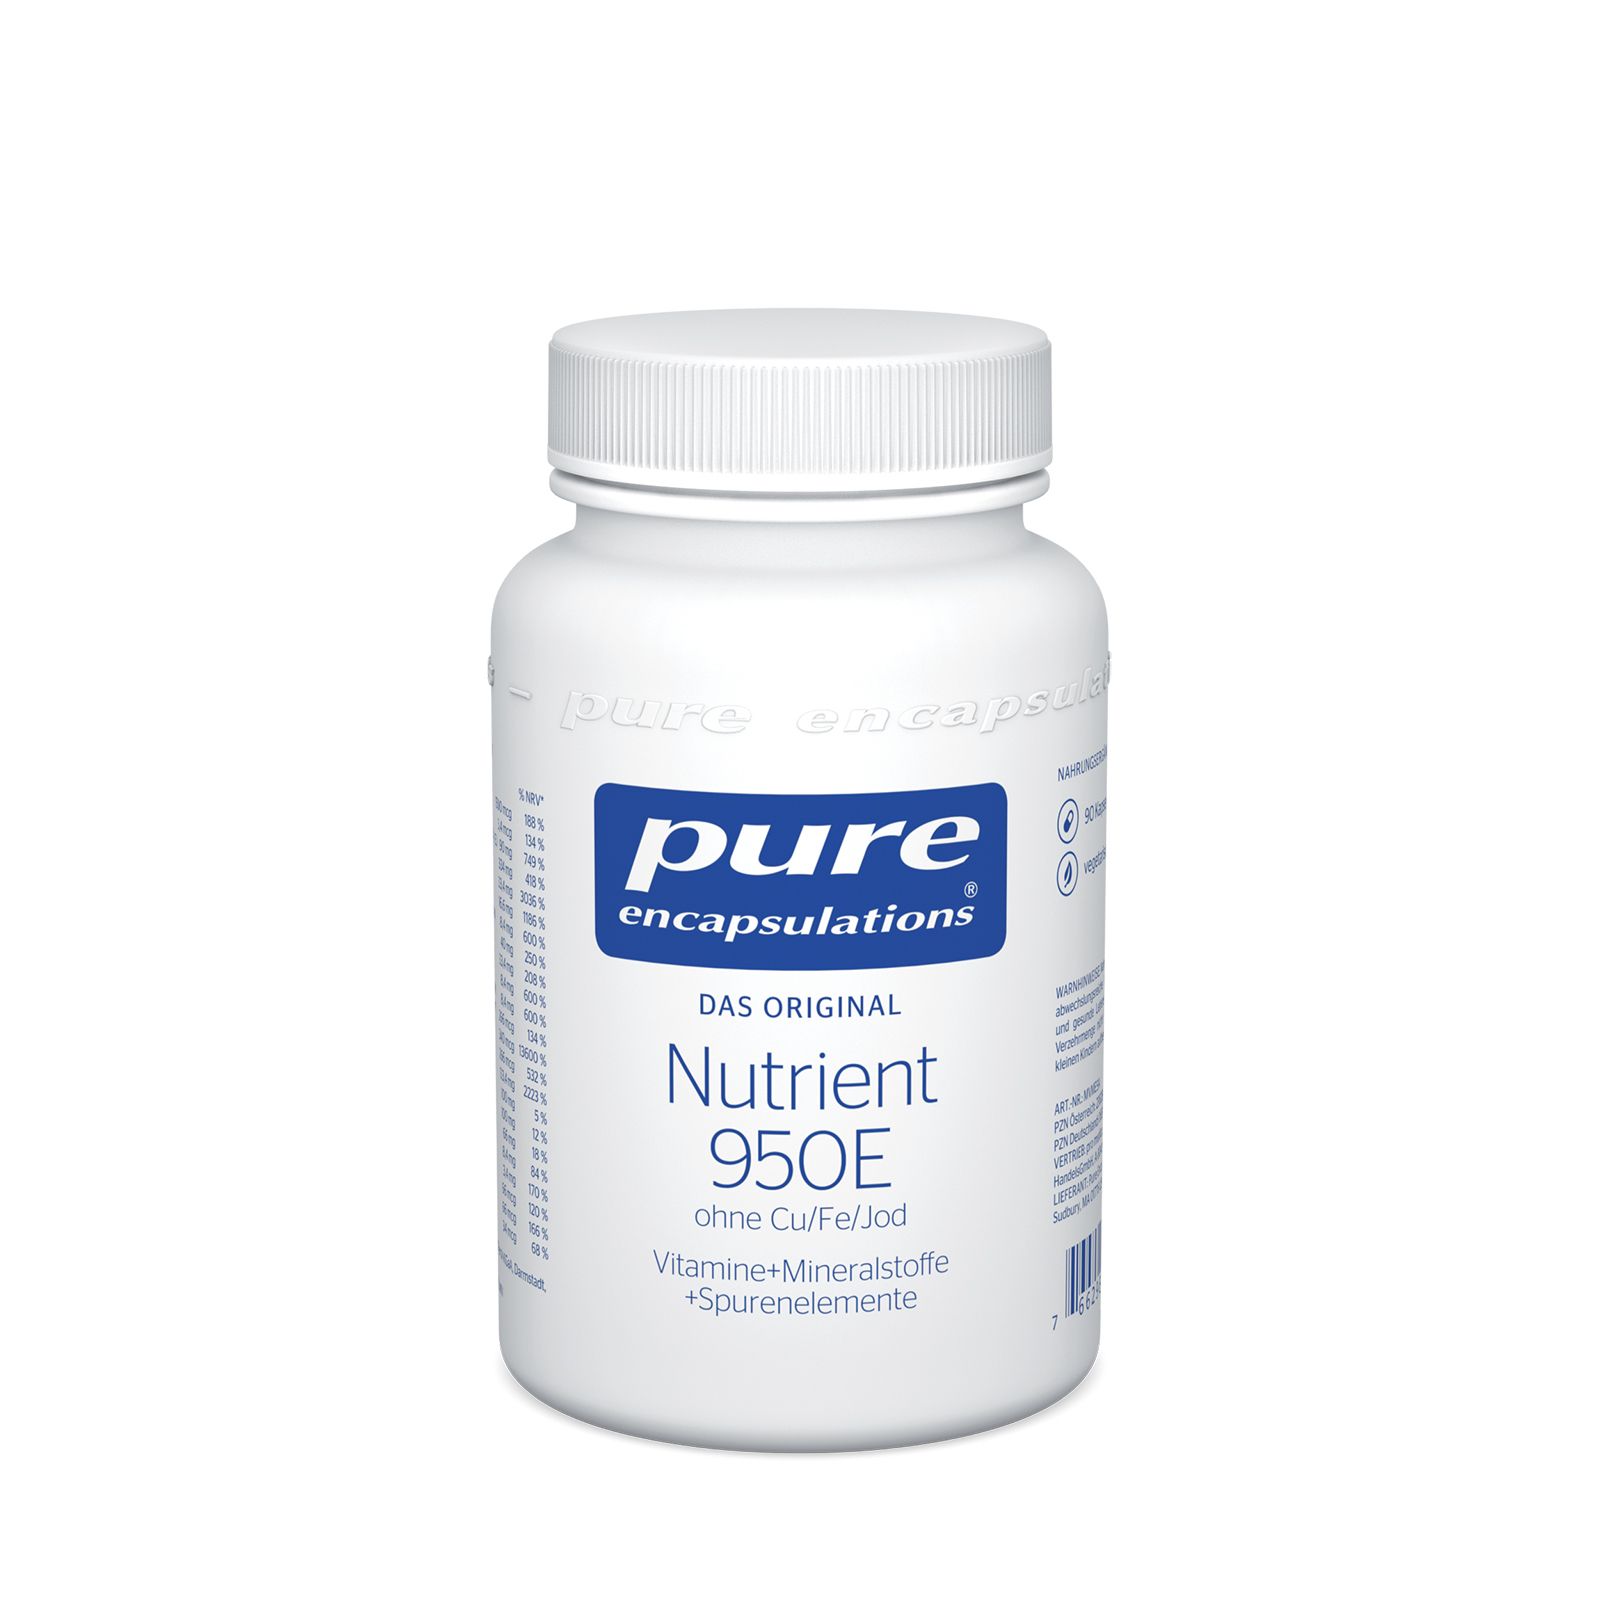 Pure encapsulations® Nutrient 950®E (ohne Cu/Fe/Jod)